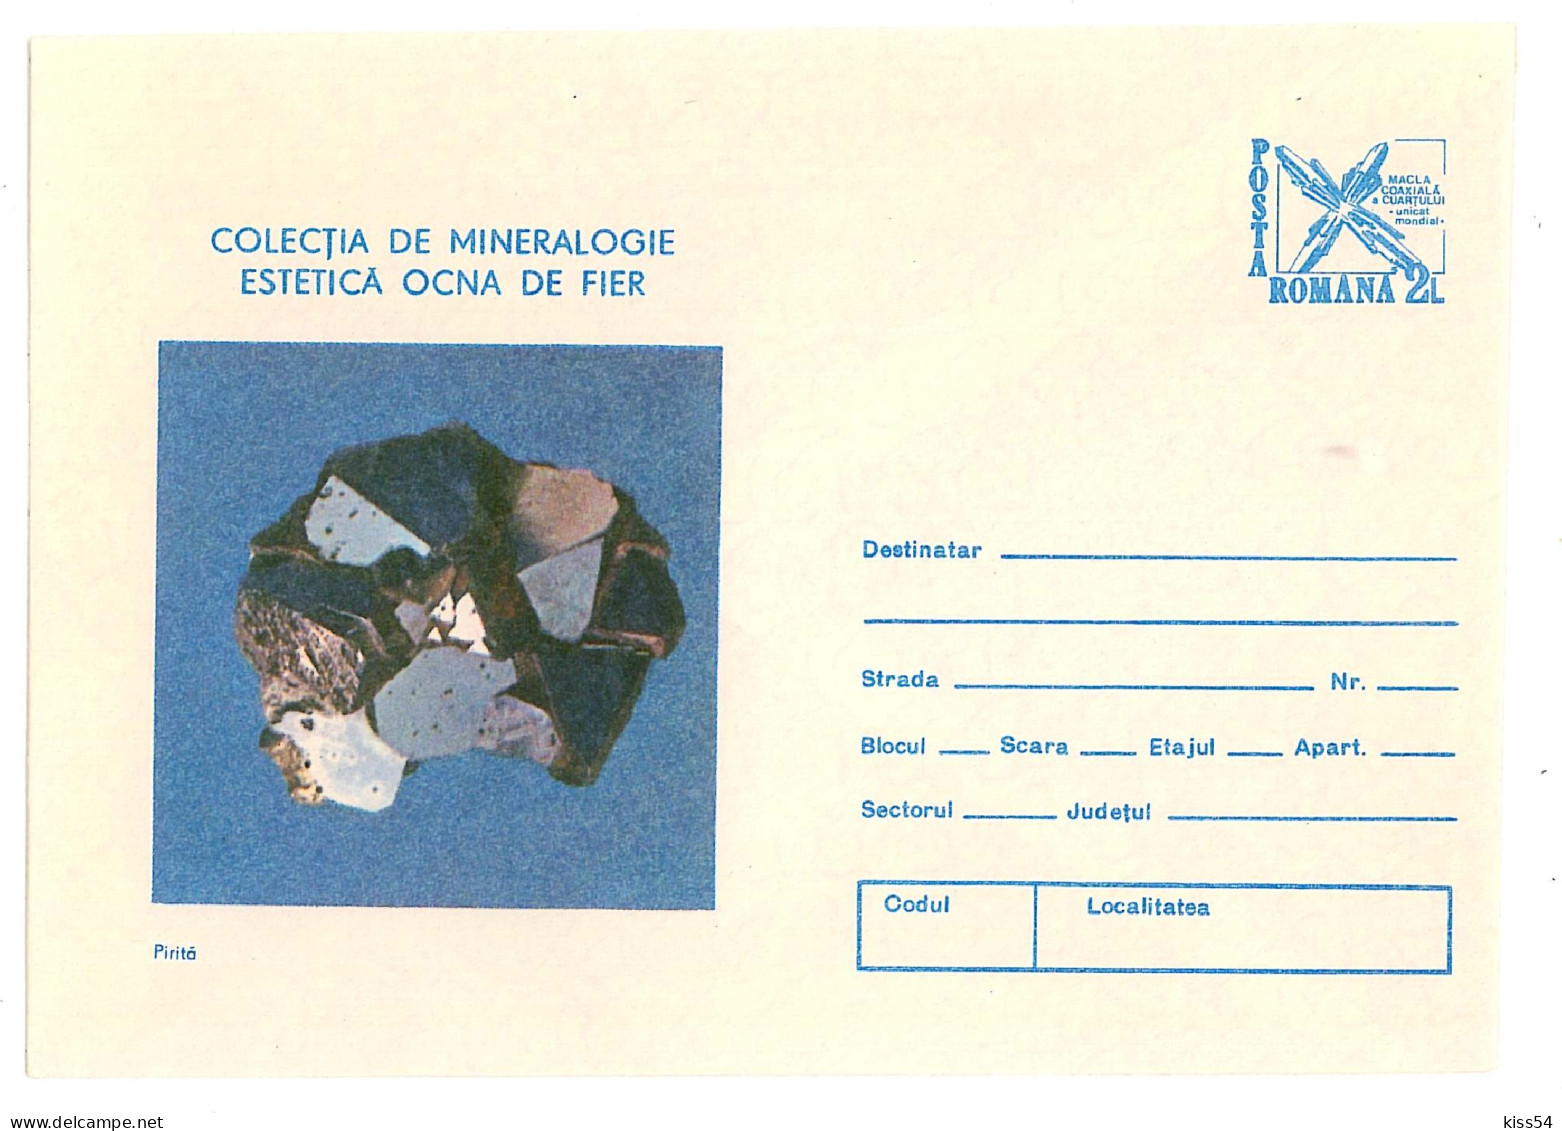 IP 89 -  98 Pirita, MINERALS, Mineralogy, Romania - Stationery - Unused - 1989 - Minerals